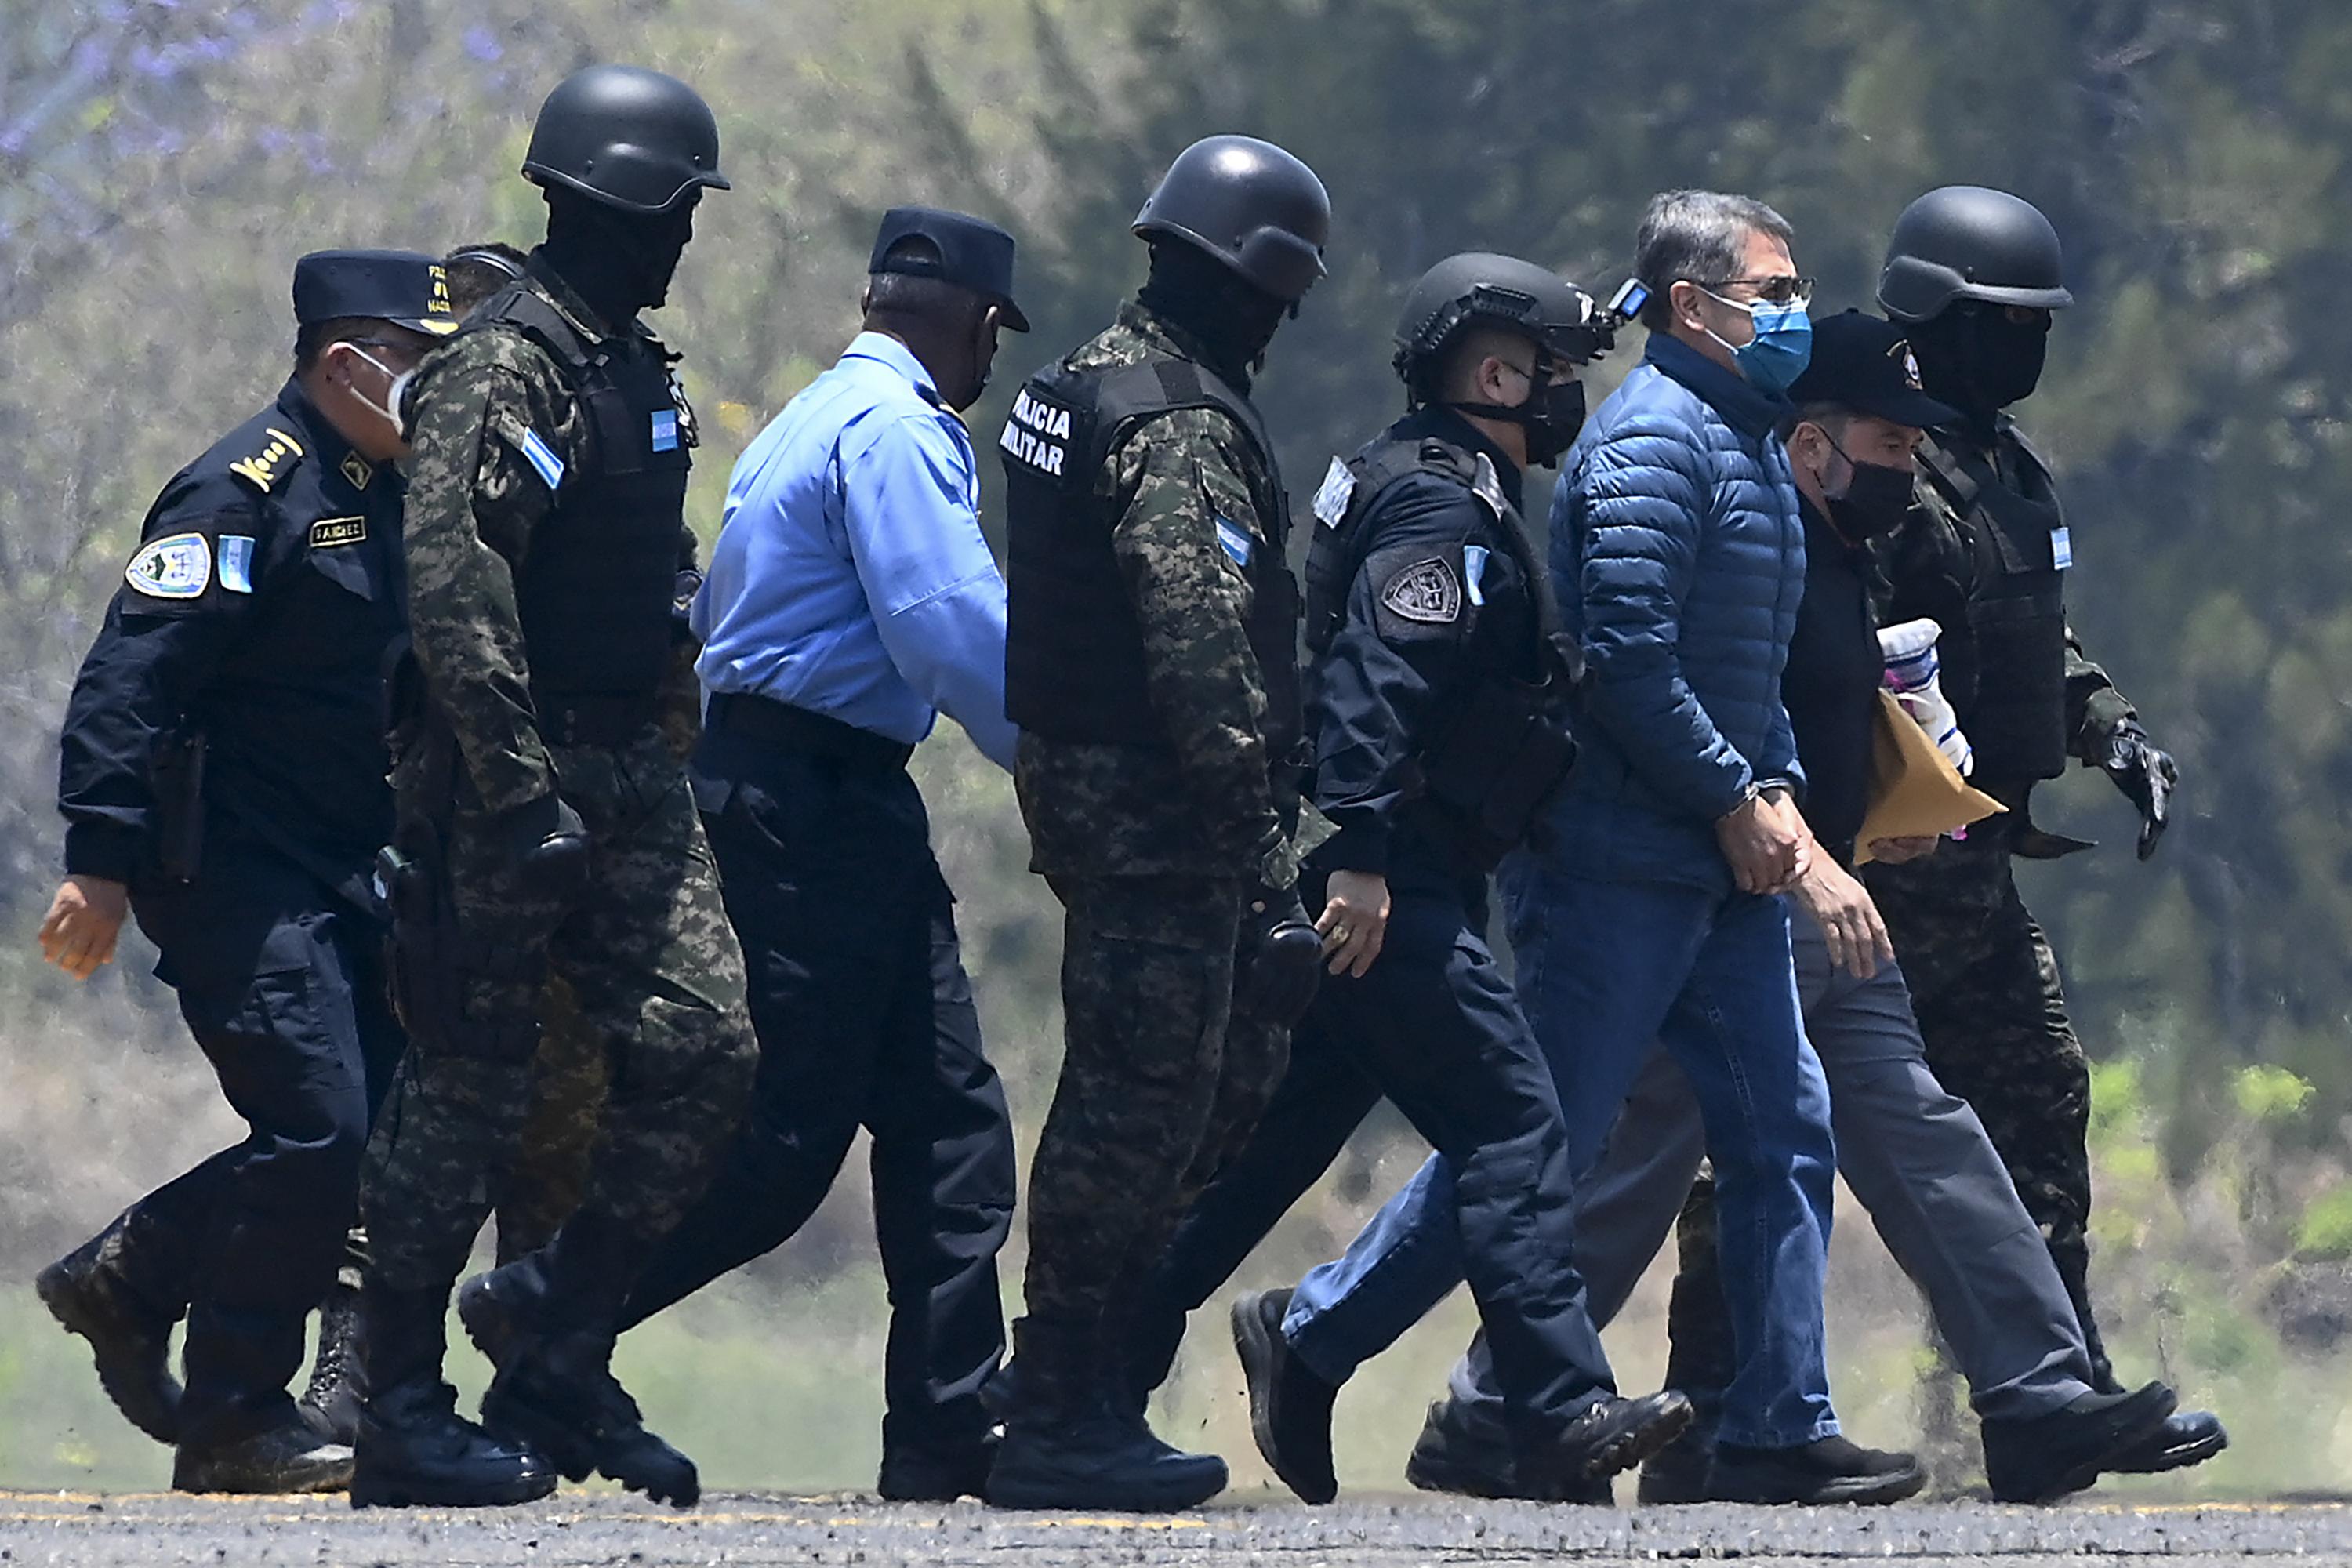 Juan Orlando Hernández es escoltado por agentes policiales a su llegada a una base de la Fuerza Aérea en Tegucigalpa. Una imagen del 21 de abril de 2022, antes de su extradición a Estados Unidos, donde enfrenta cargos relacionados con el narcotráfico. Foto de El Faro: Orlando Sierra/ AFP.